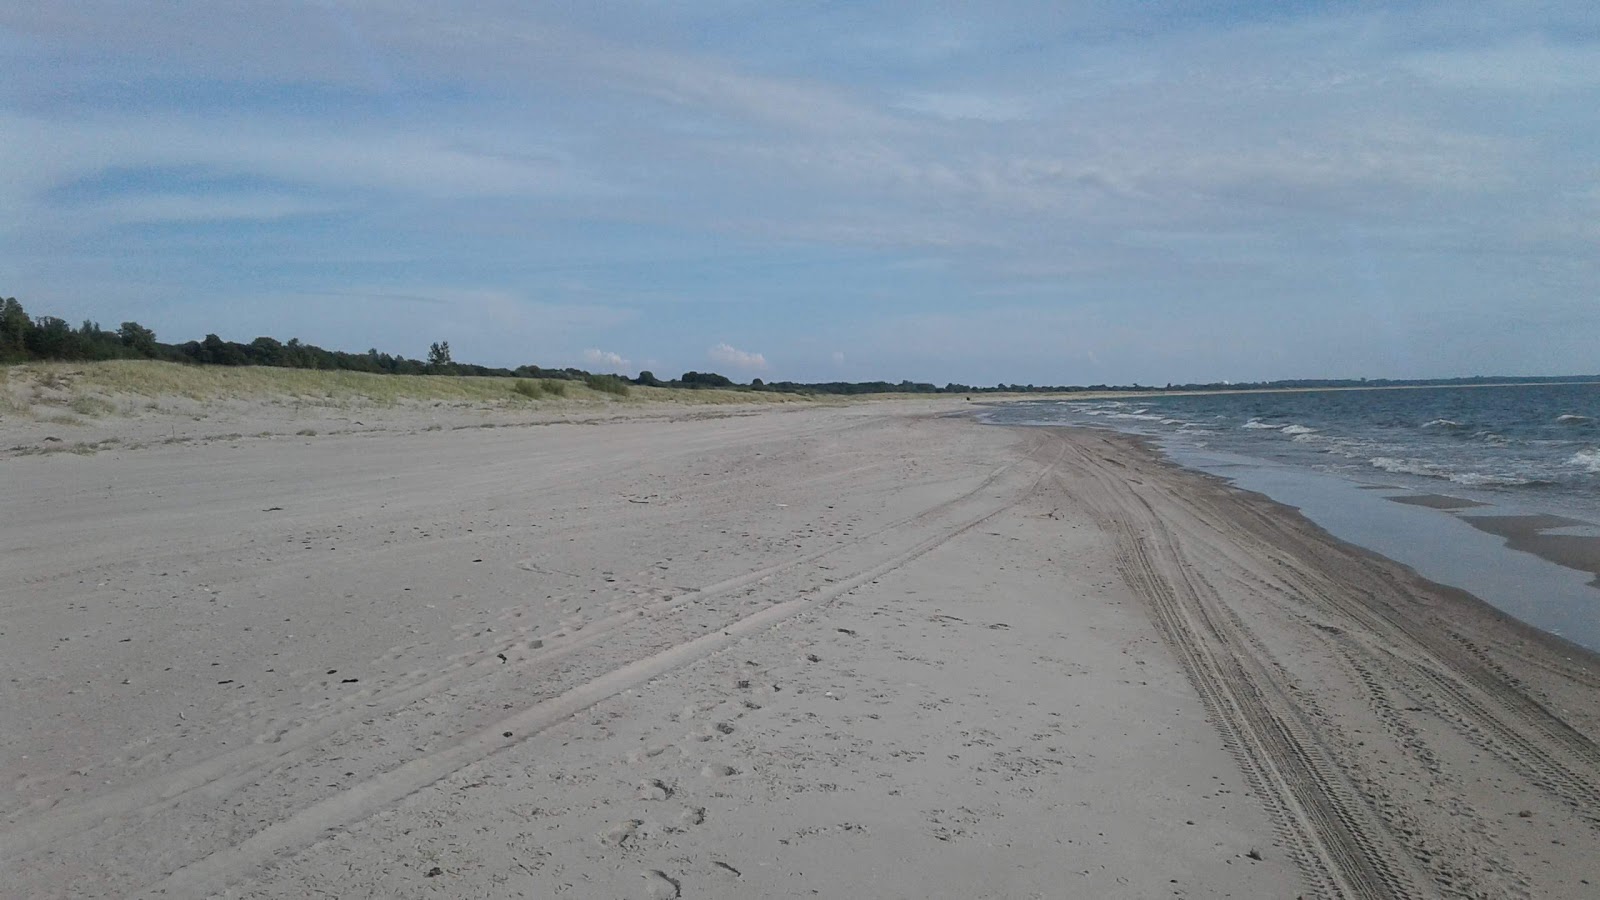 Yantarnyy Bereg beach'in fotoğrafı imkanlar alanı